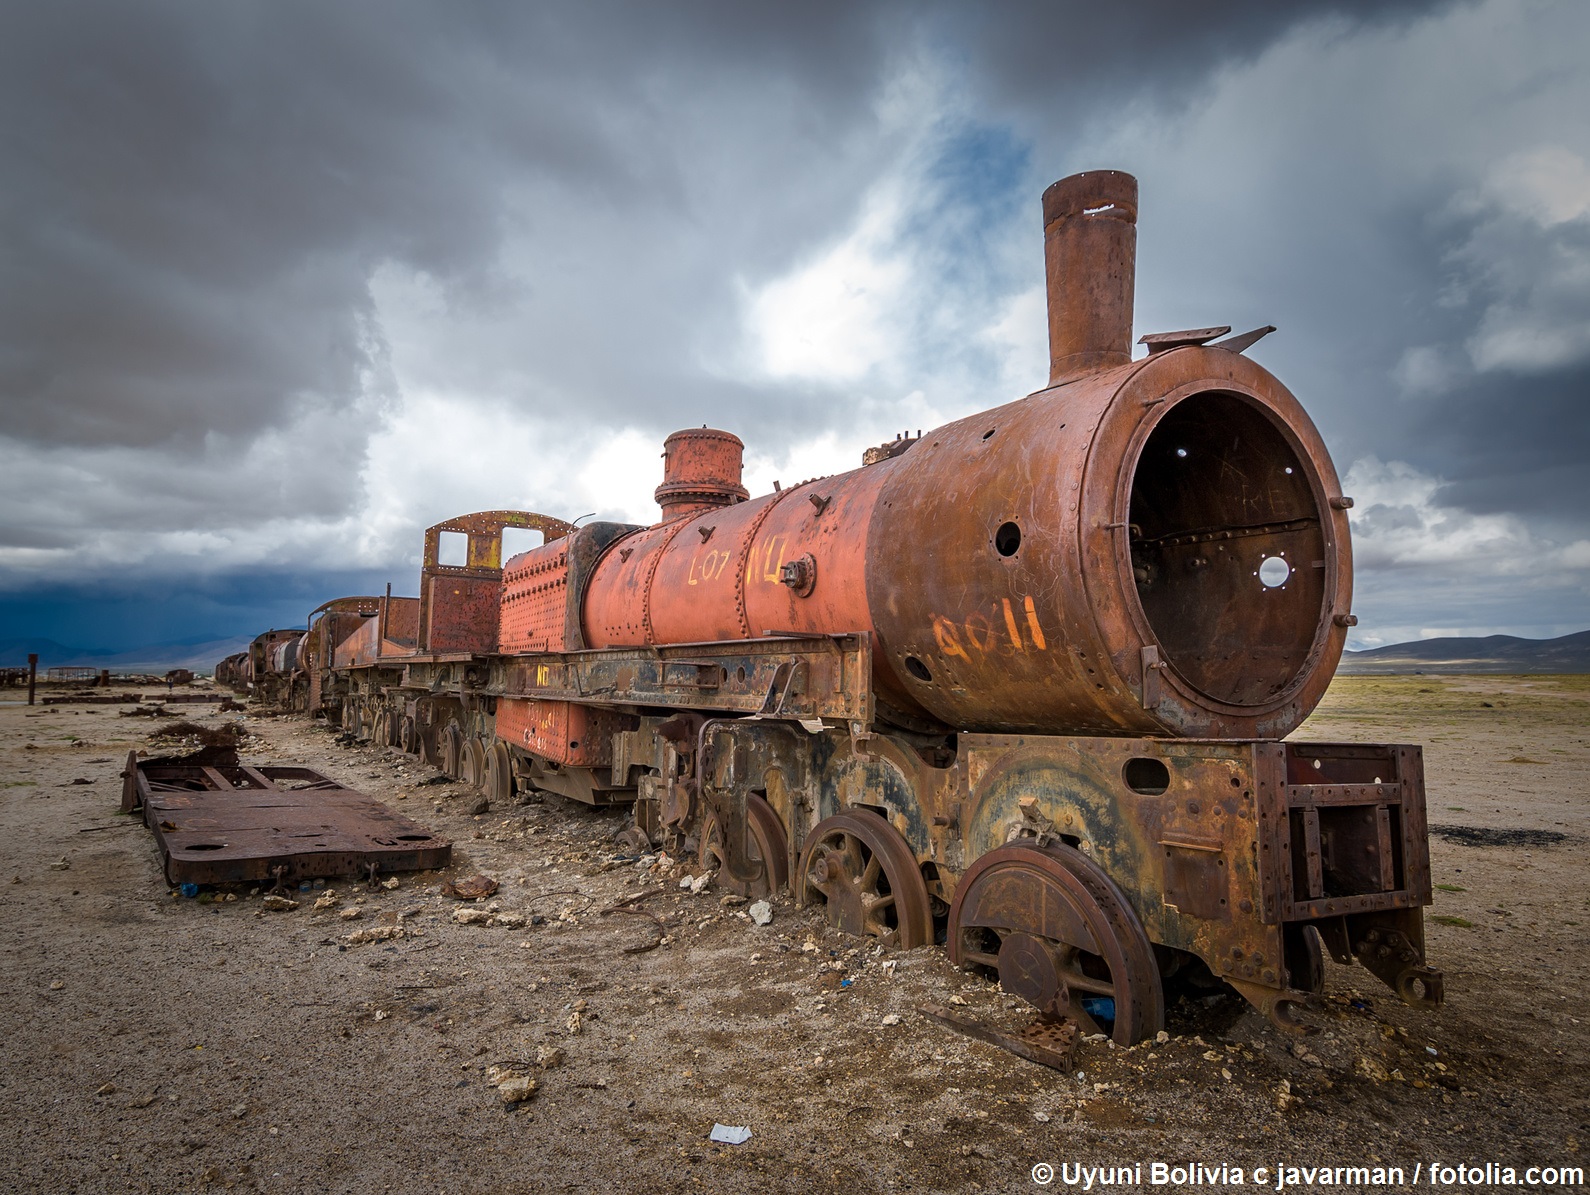 Verrostete Dampflokomotive . Bildquelle Uyuni_Bolivia_c_javarman / fotolia.com